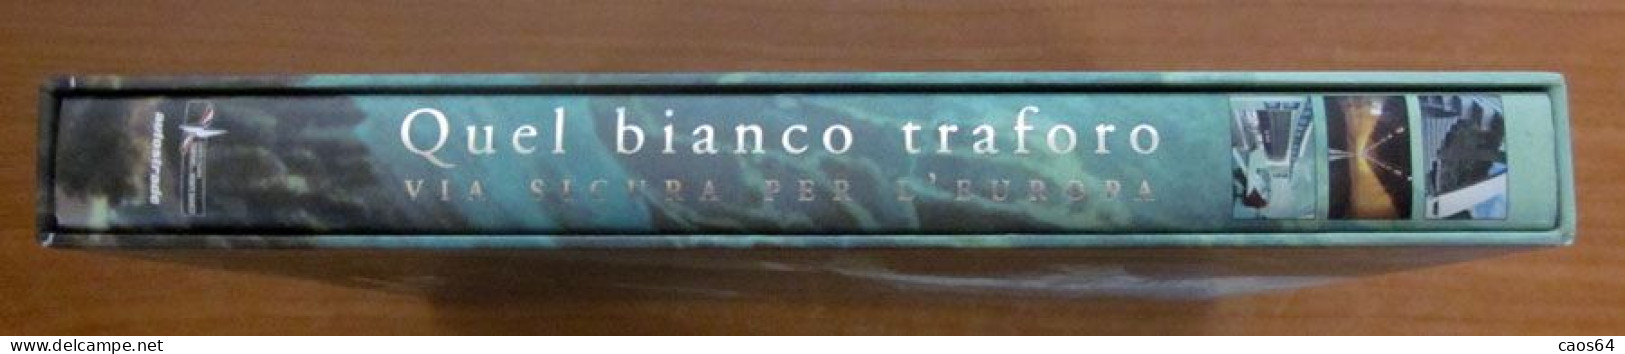 Quel Bianco Traforo Via Sicura Per L'Europa Autostrade 2002 - History, Biography, Philosophy